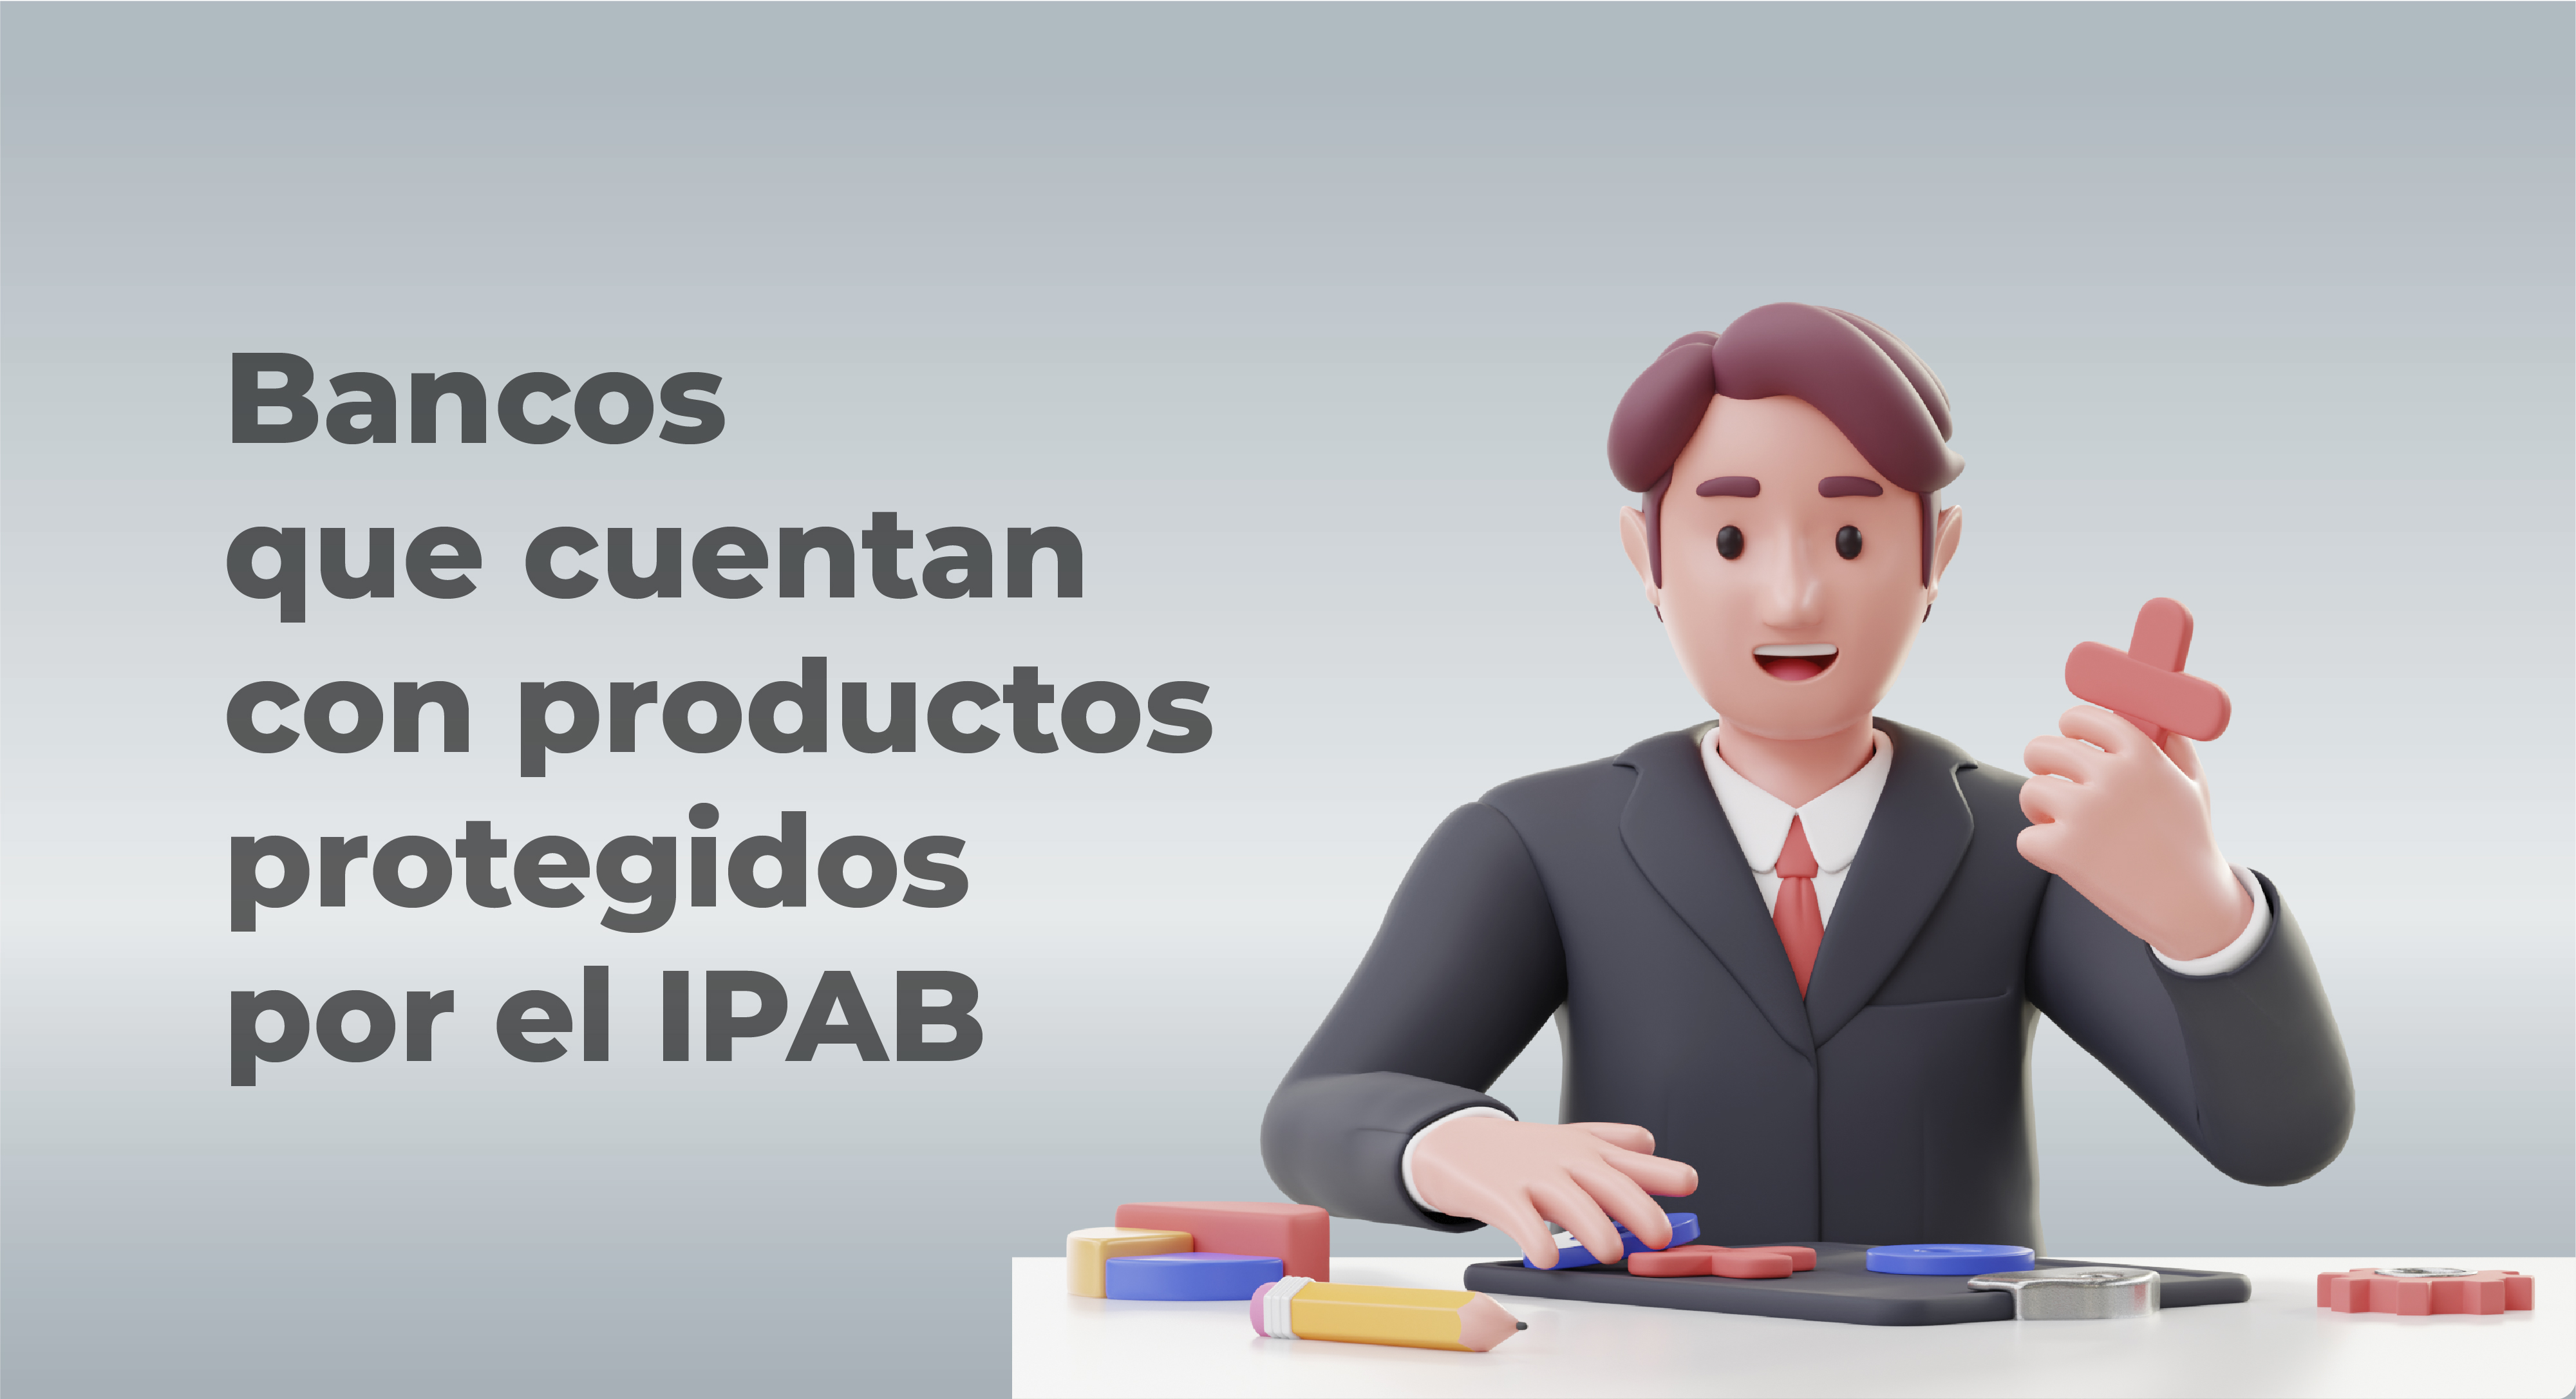 Bancos que cuentan con productos protegidos por el IPAB.